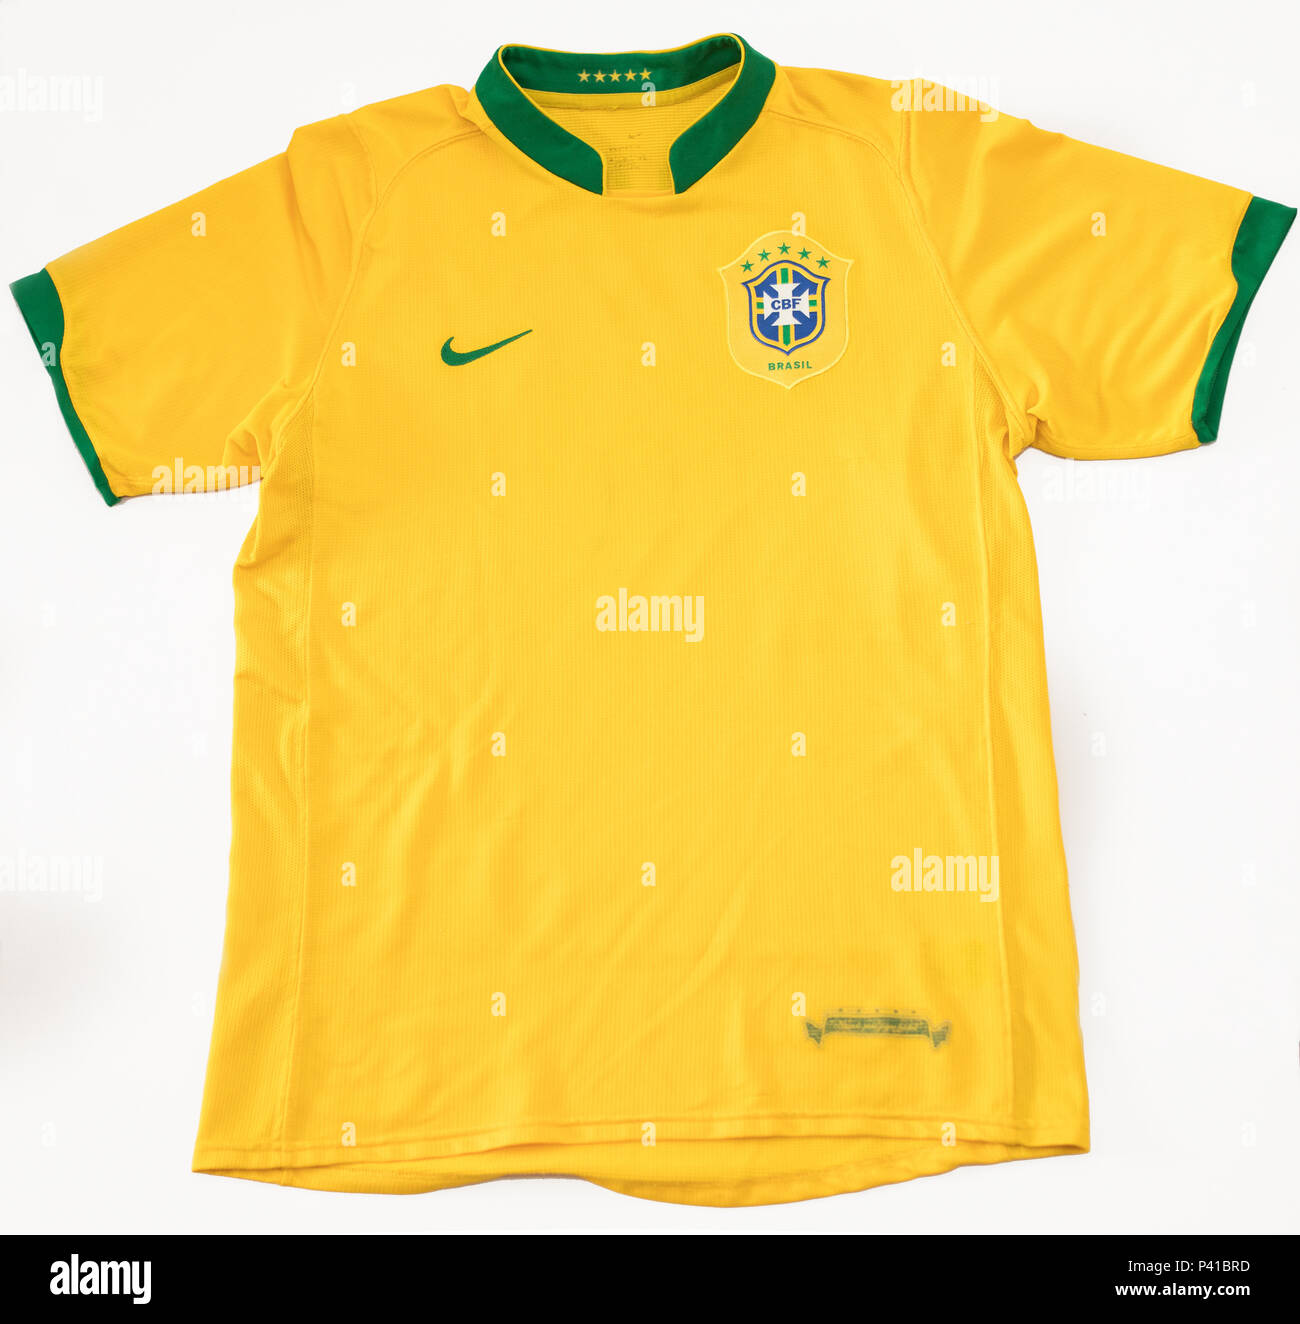 Seleção brasileira de futebol hi-res stock photography and images